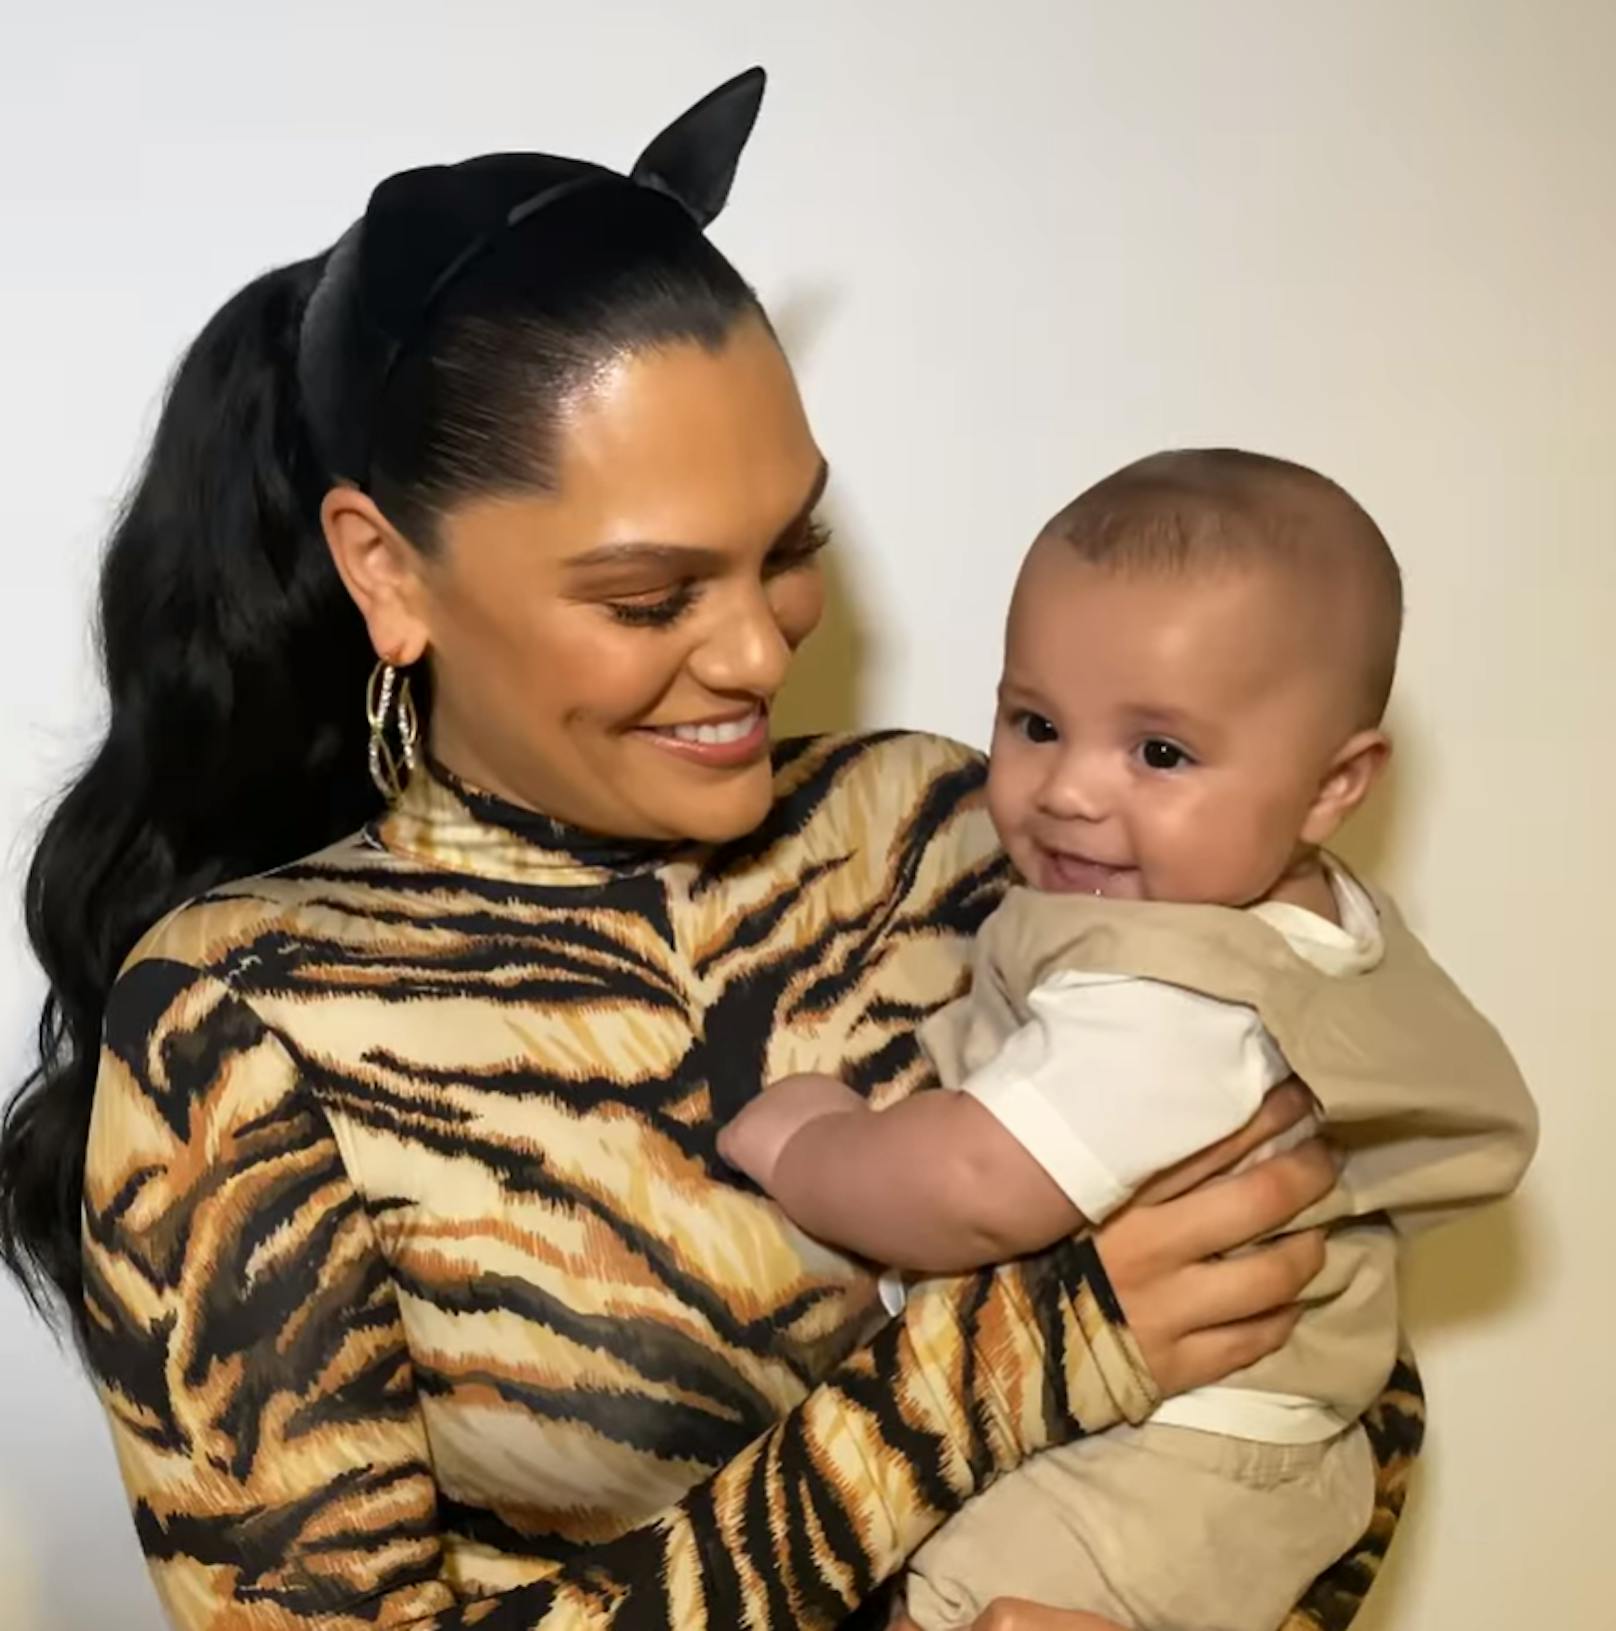 Sängerin Jessie J strahlt mit ihrem Baby um die Wette.